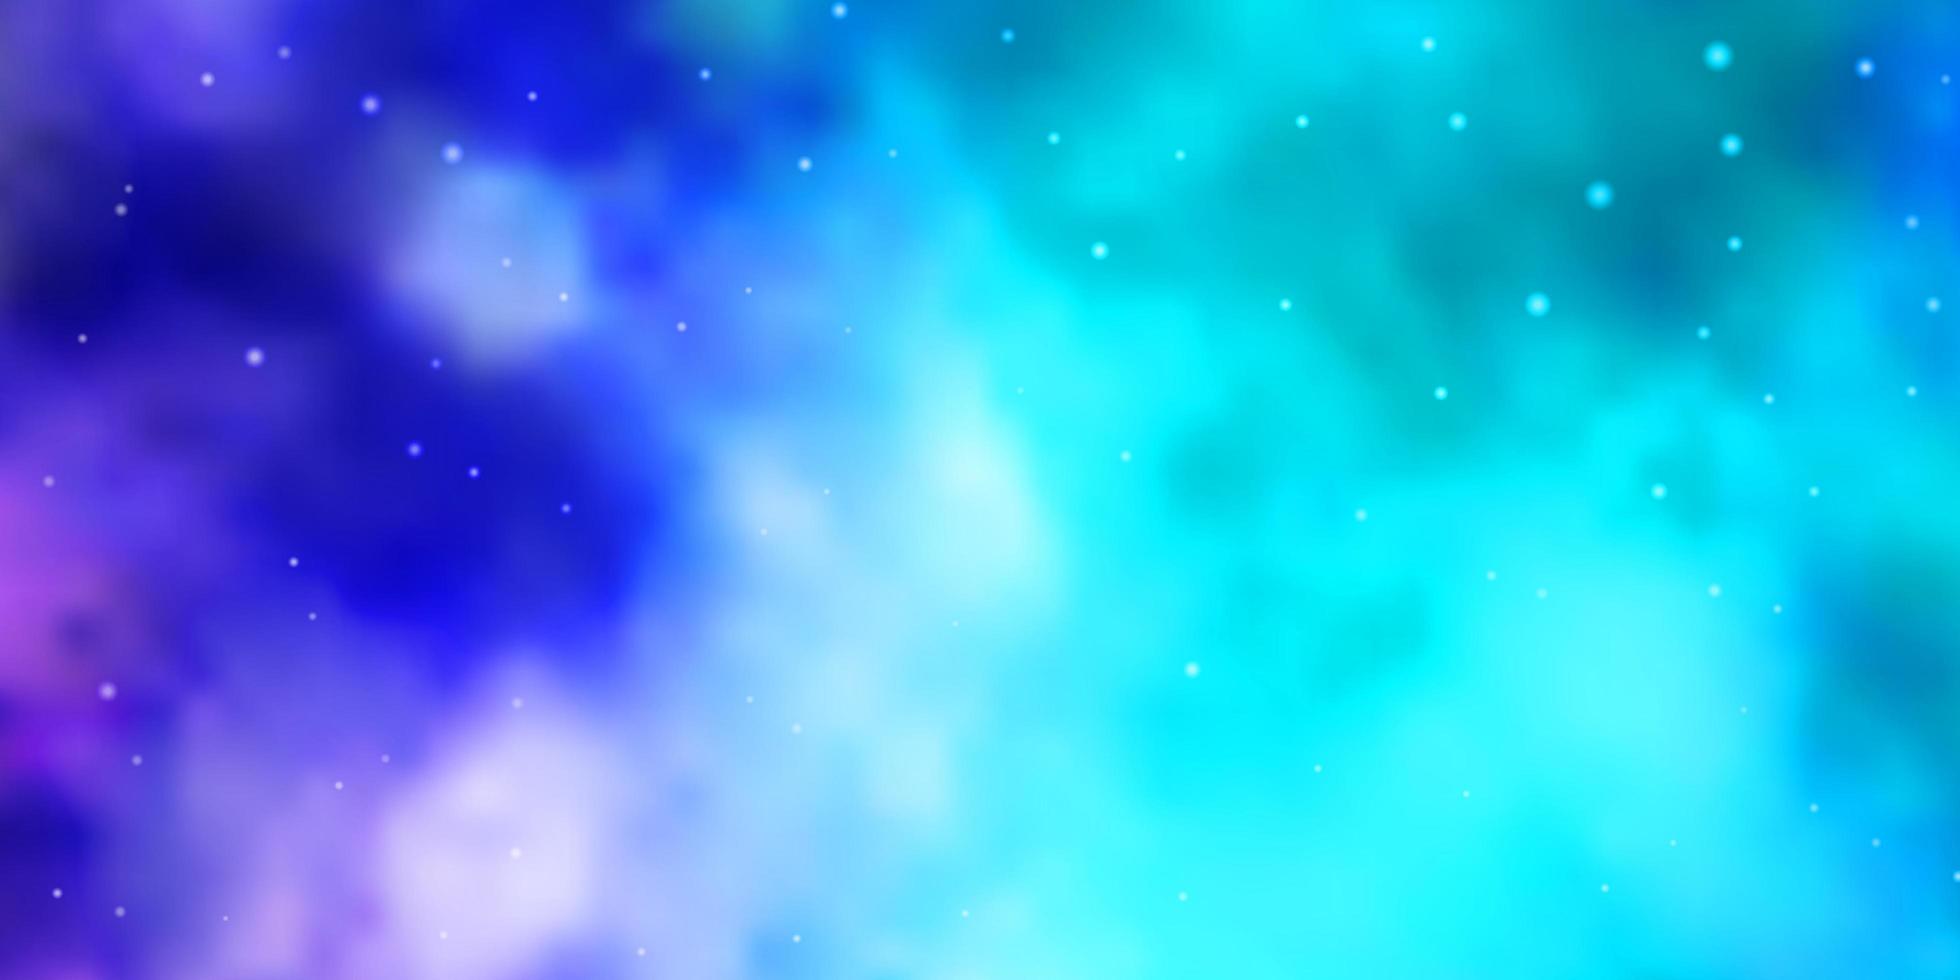 ljusrosa, blått vektormönster med abstrakta stjärnor. vektor